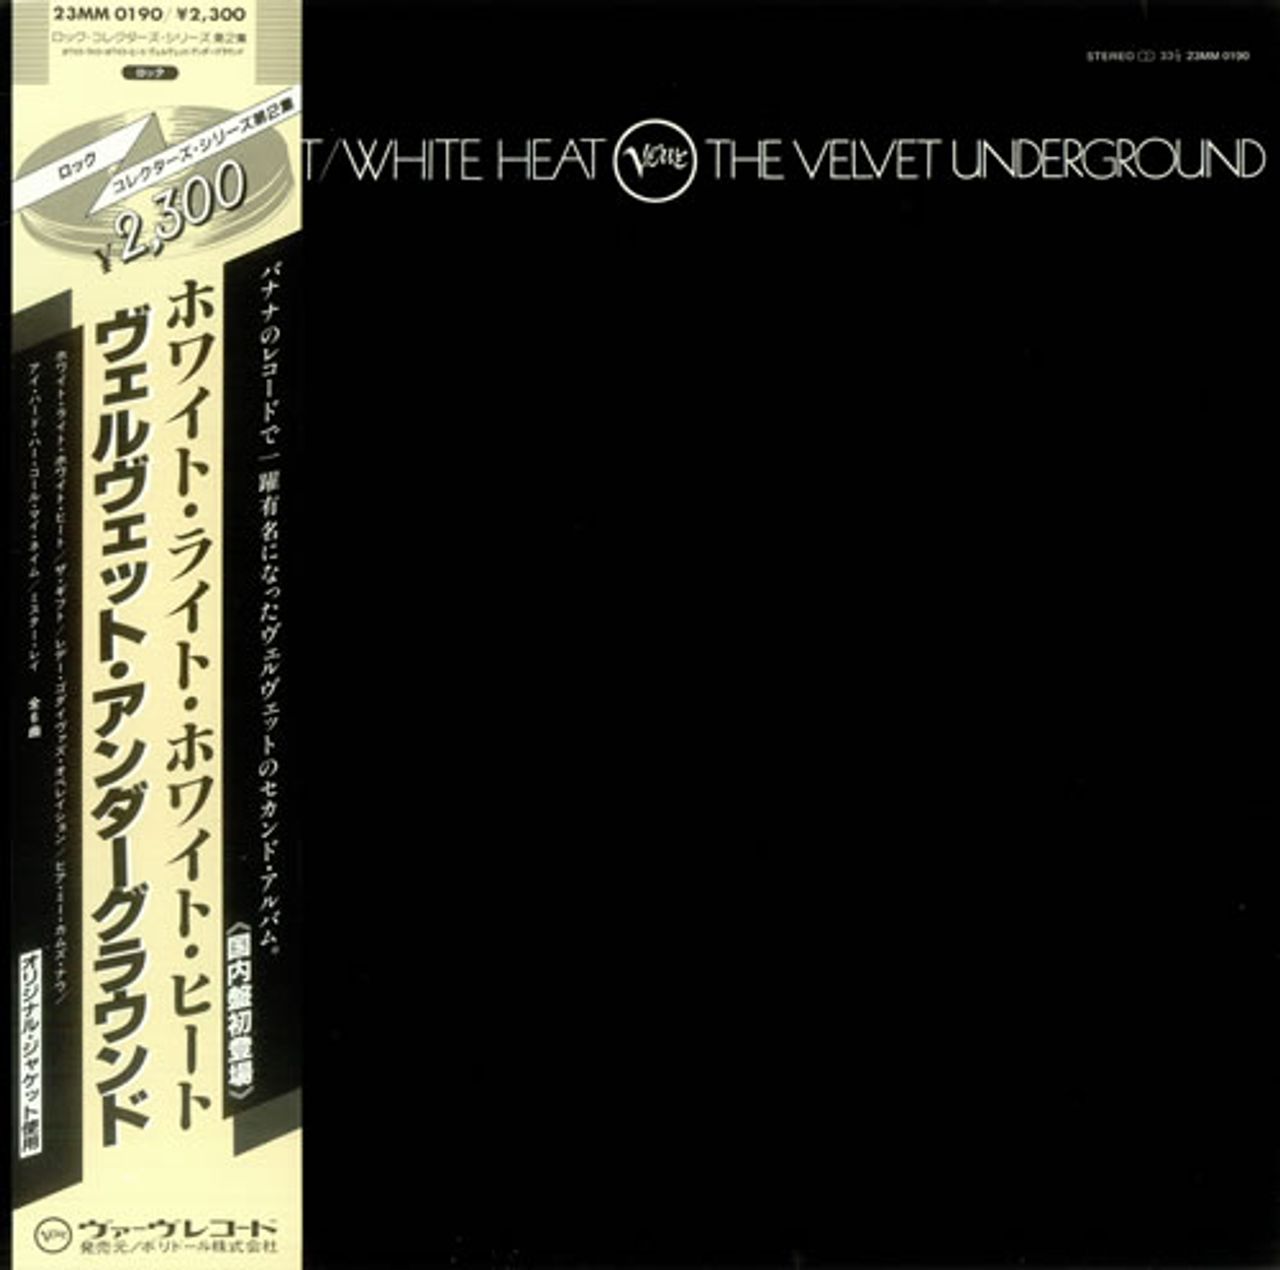 Velvet Underground White Light White Heat Japanese vinyl LP album (LP record) 23MM0190